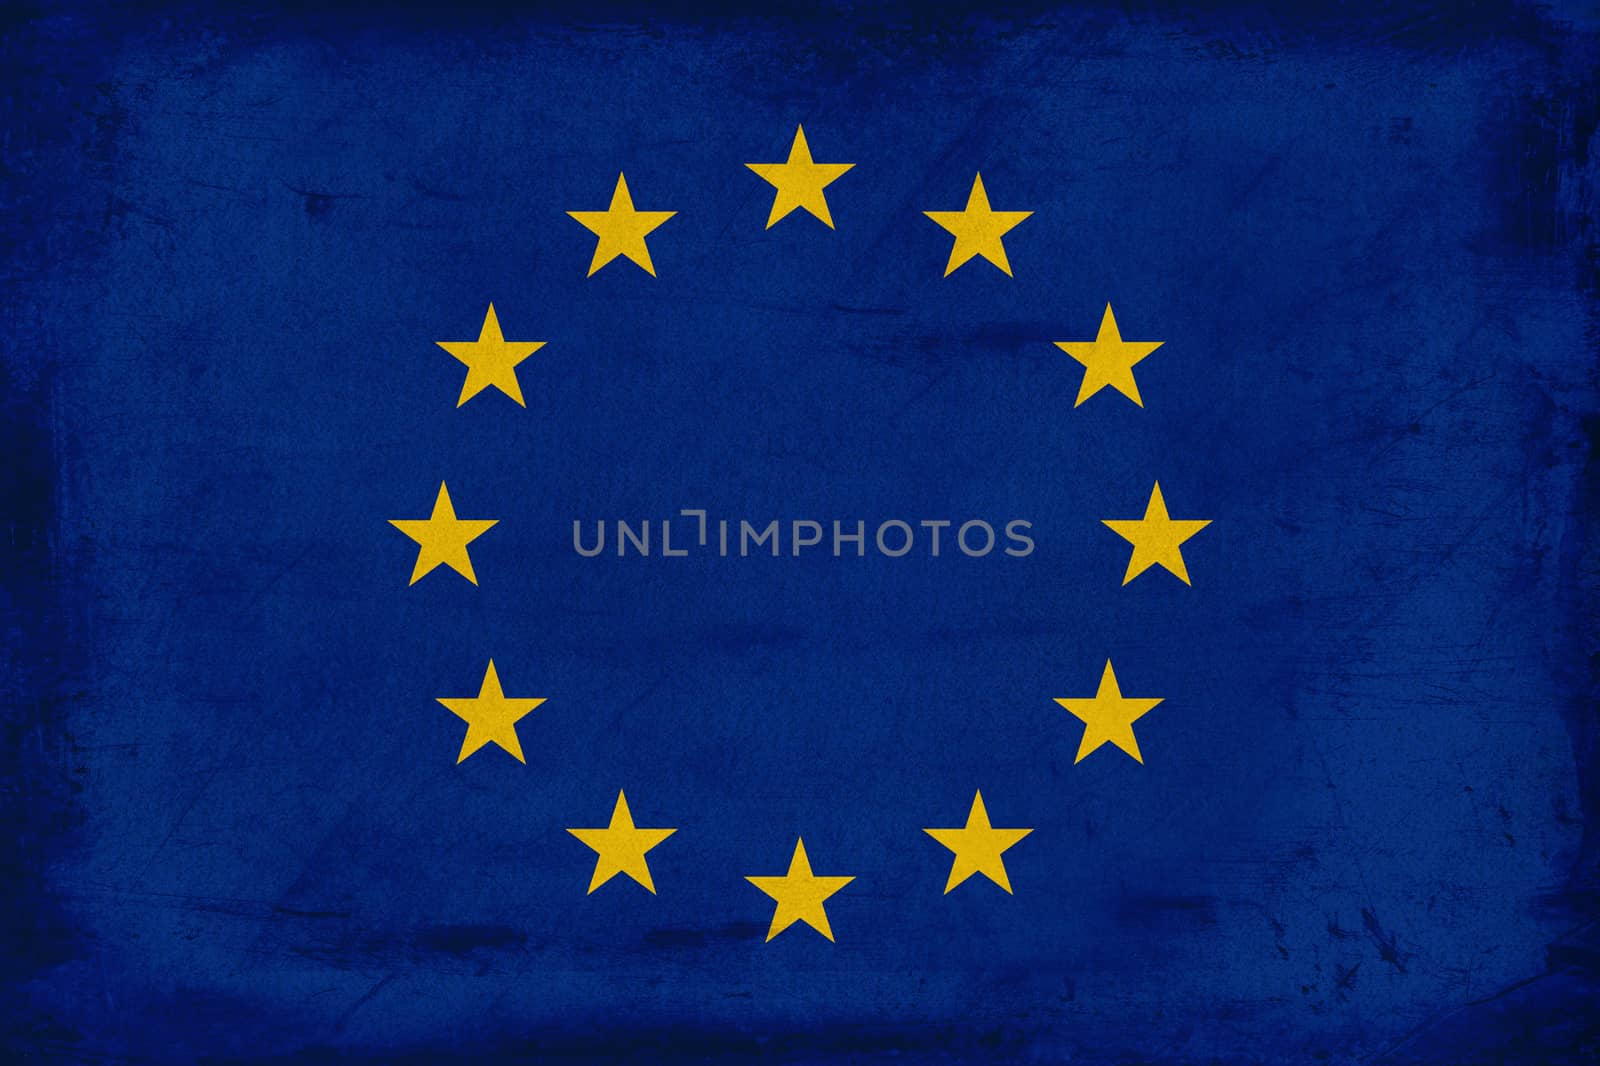 Vintage European Union flag background by myyaym